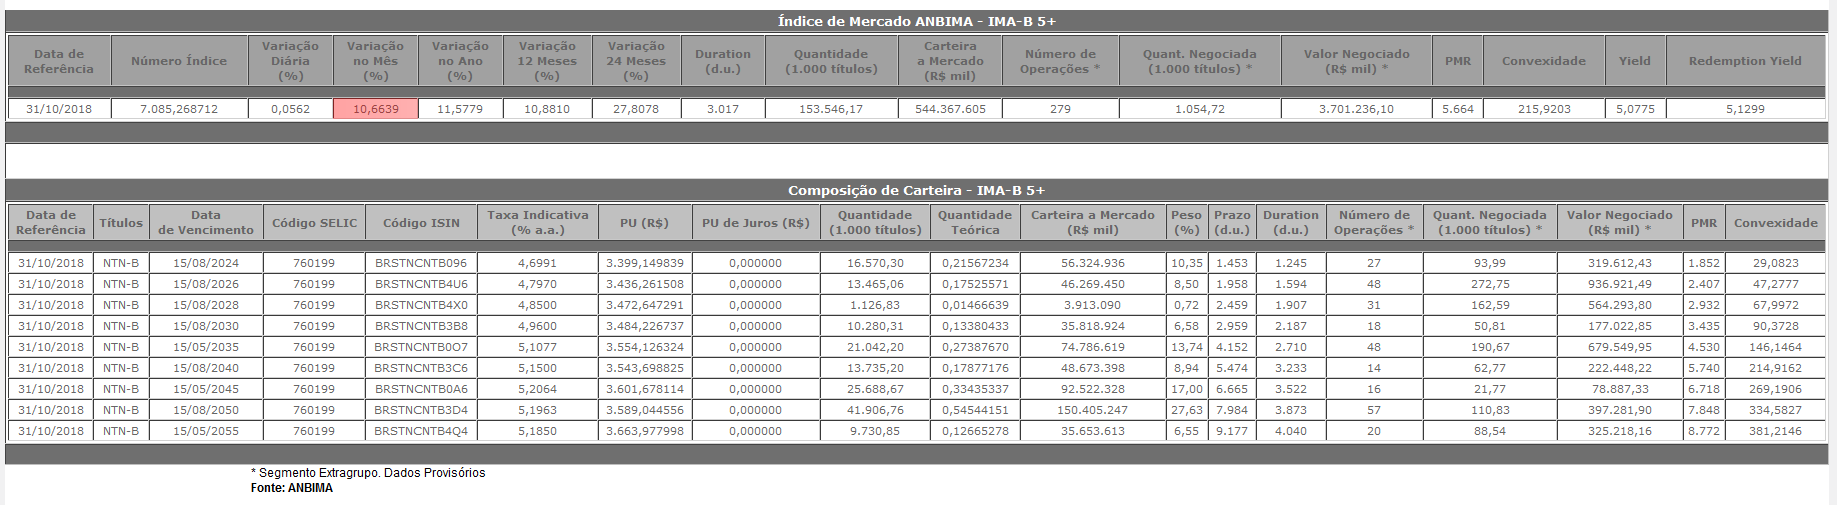 Ima-b 5+ anbima 10,66% rentabilidade no mês renda fixa